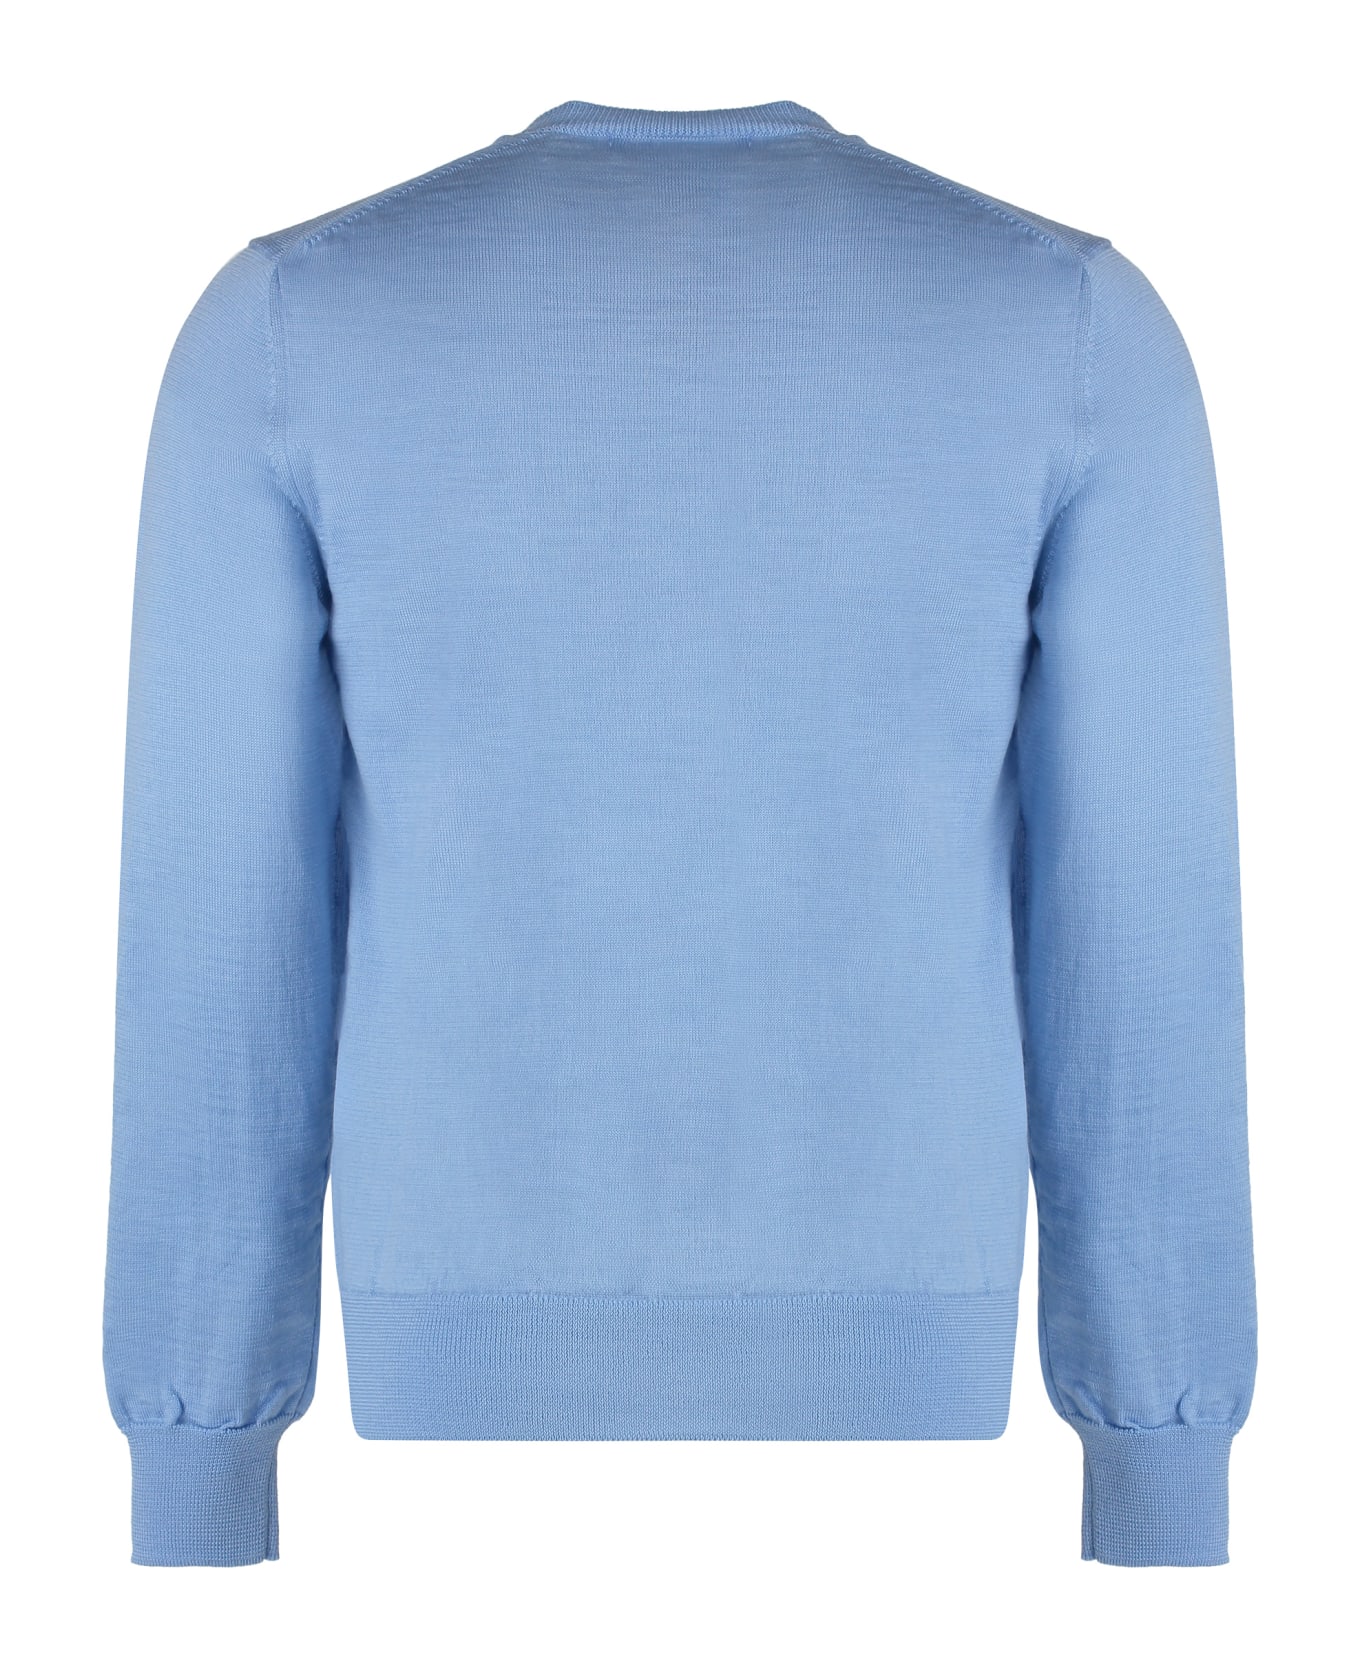 Comme des Garçons Shirt X Disney - Long Sleeve Crew-neck Sweater - Light Blue